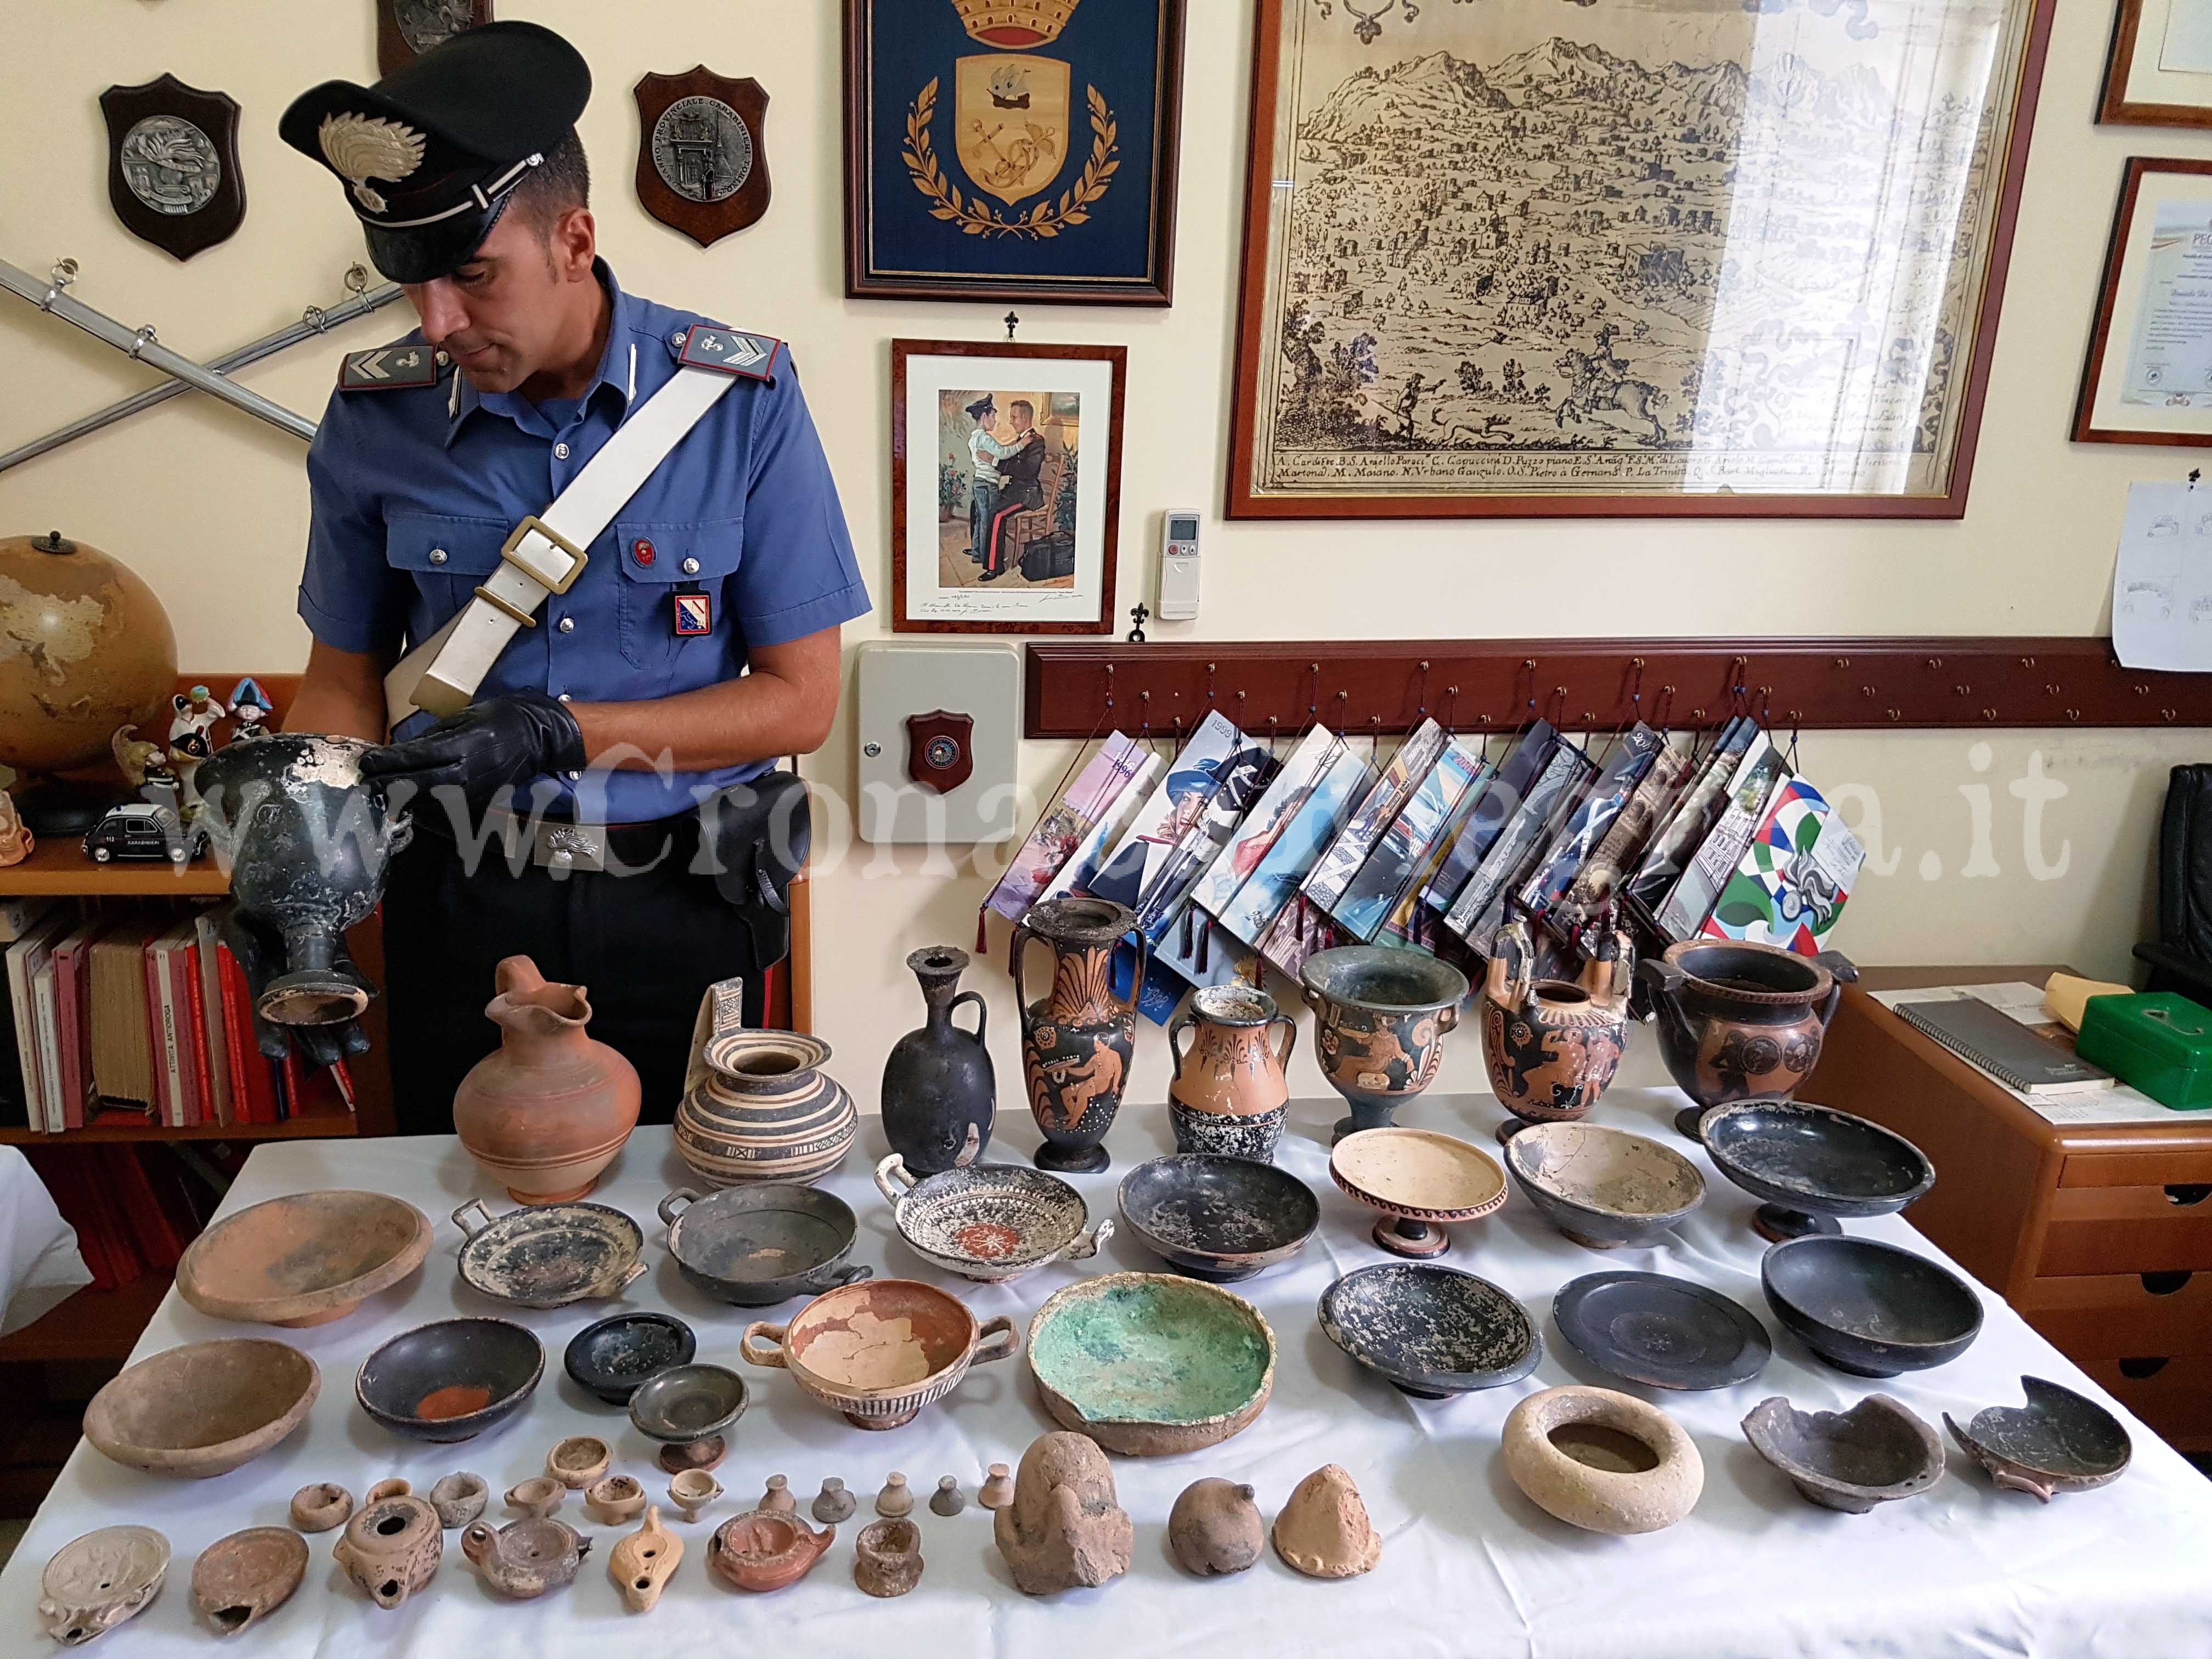 Reperti archeologici per milioni di euro trovati in casa di un medico